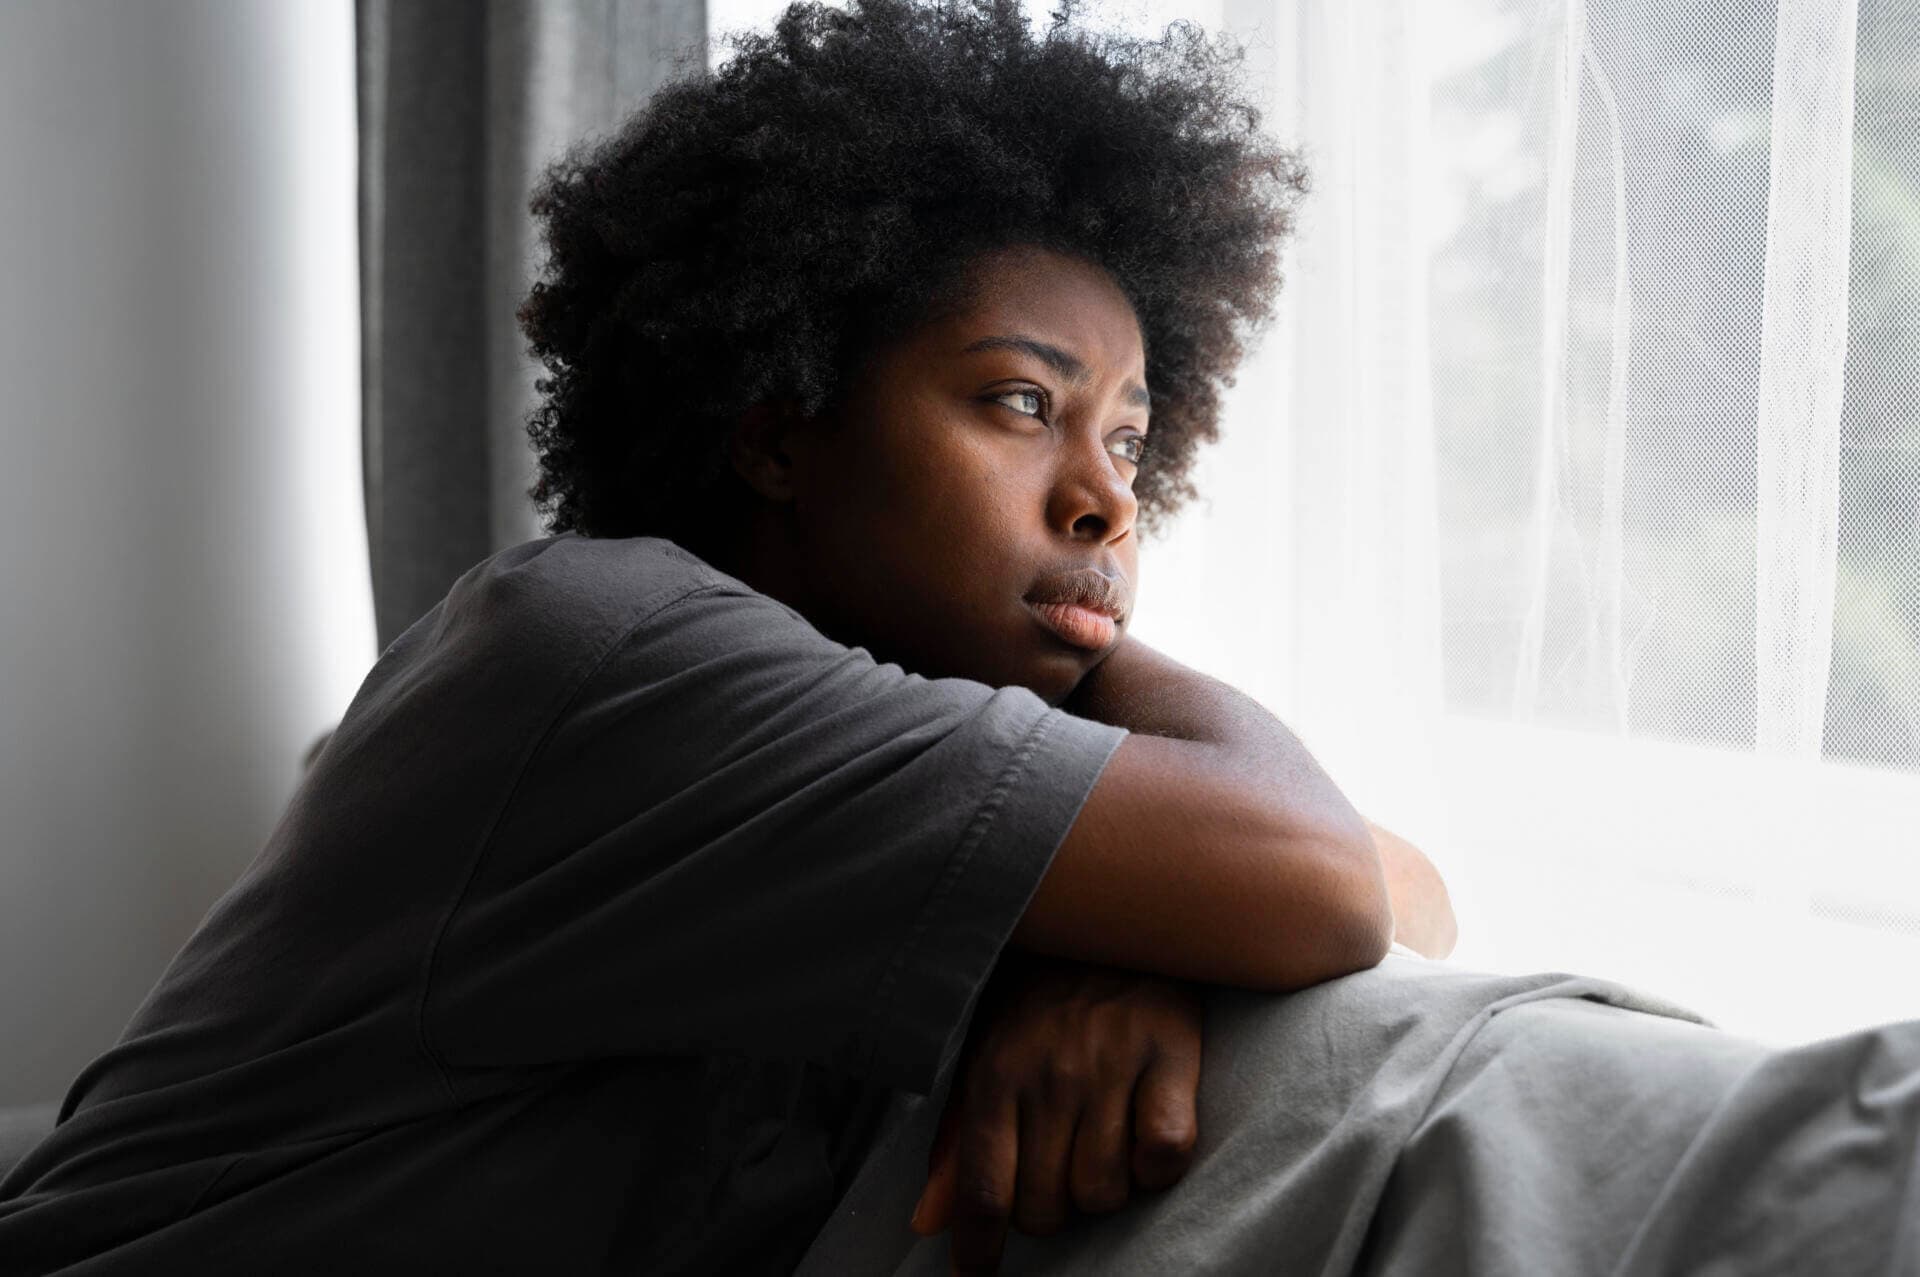 Mulheres com doenças como ansiedade e depressão têm mais chance de desenvolver câncer de colo de útero